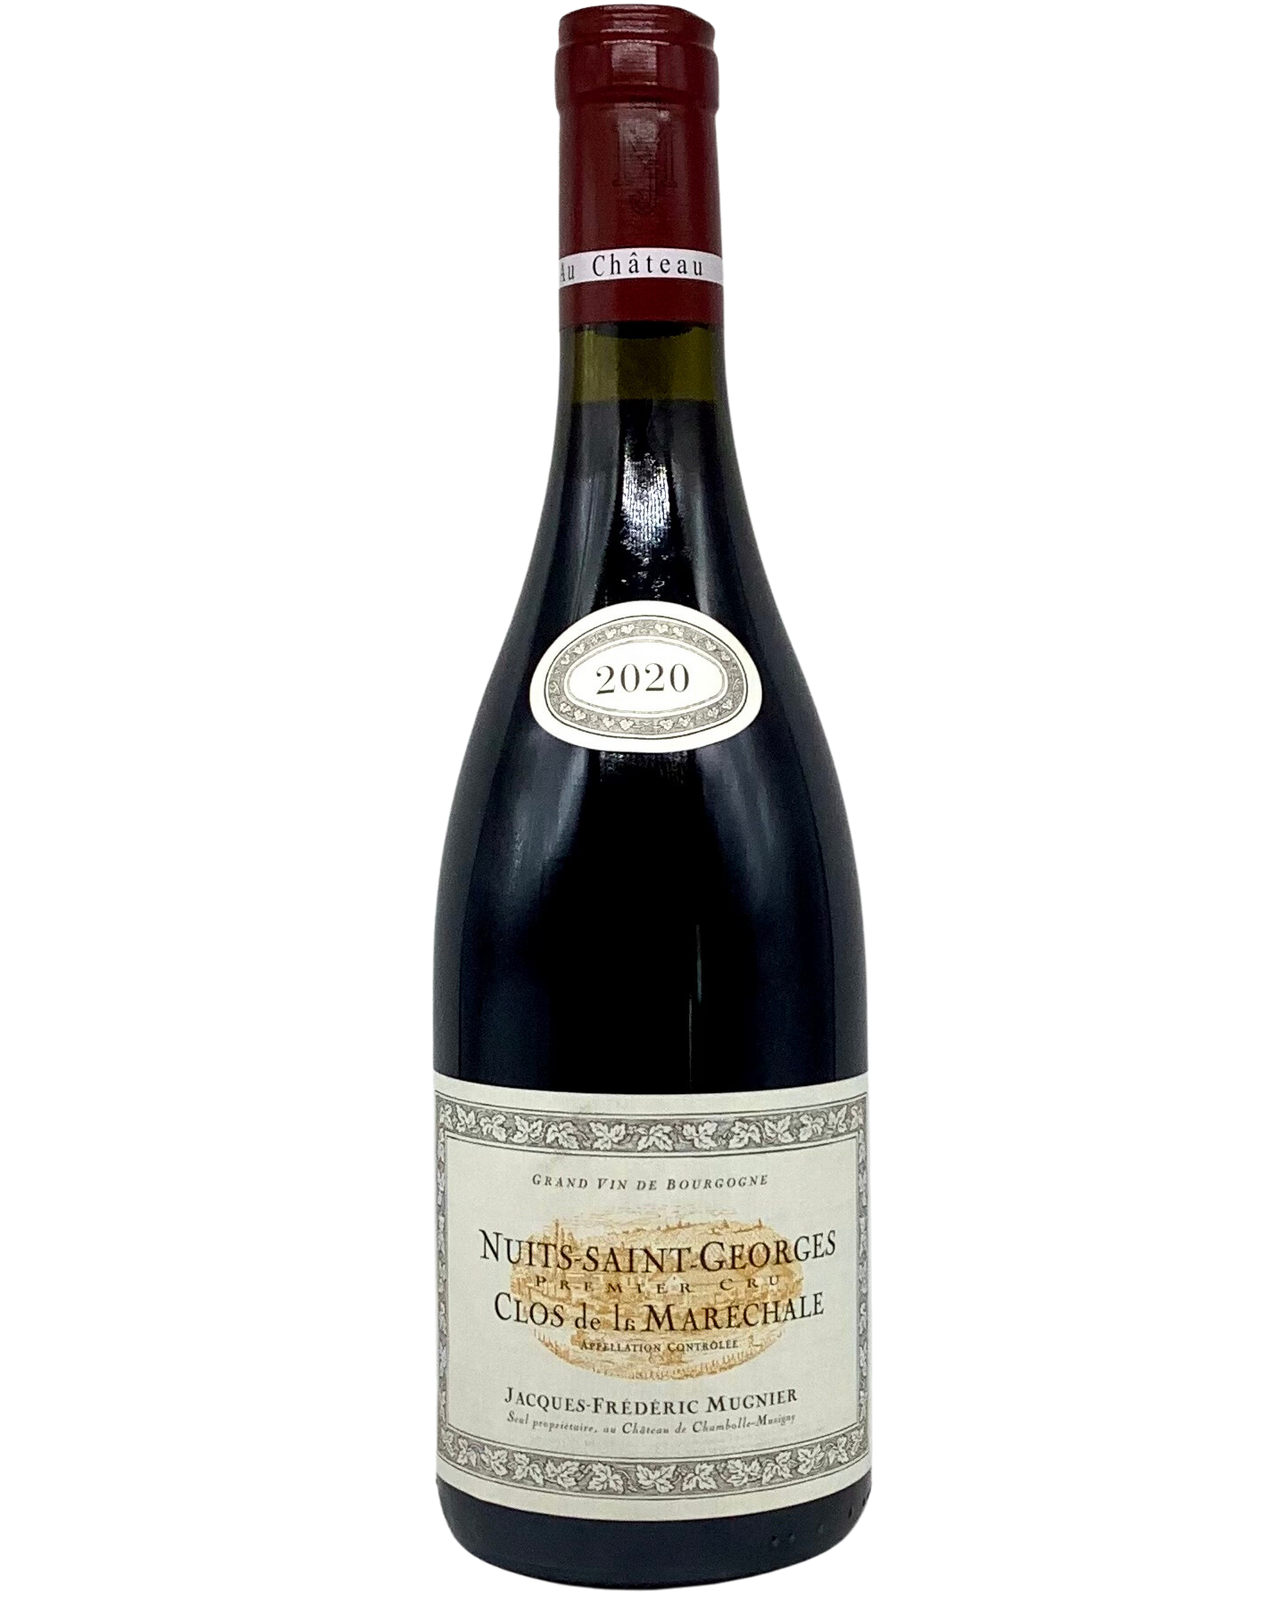 Jacques-Frédéric Mugnier, Pinot Noir, Nuits-Saint-Georges 1er Cru Clos de la Maréchale, Côte de Nuits, Burgundy, France 2020